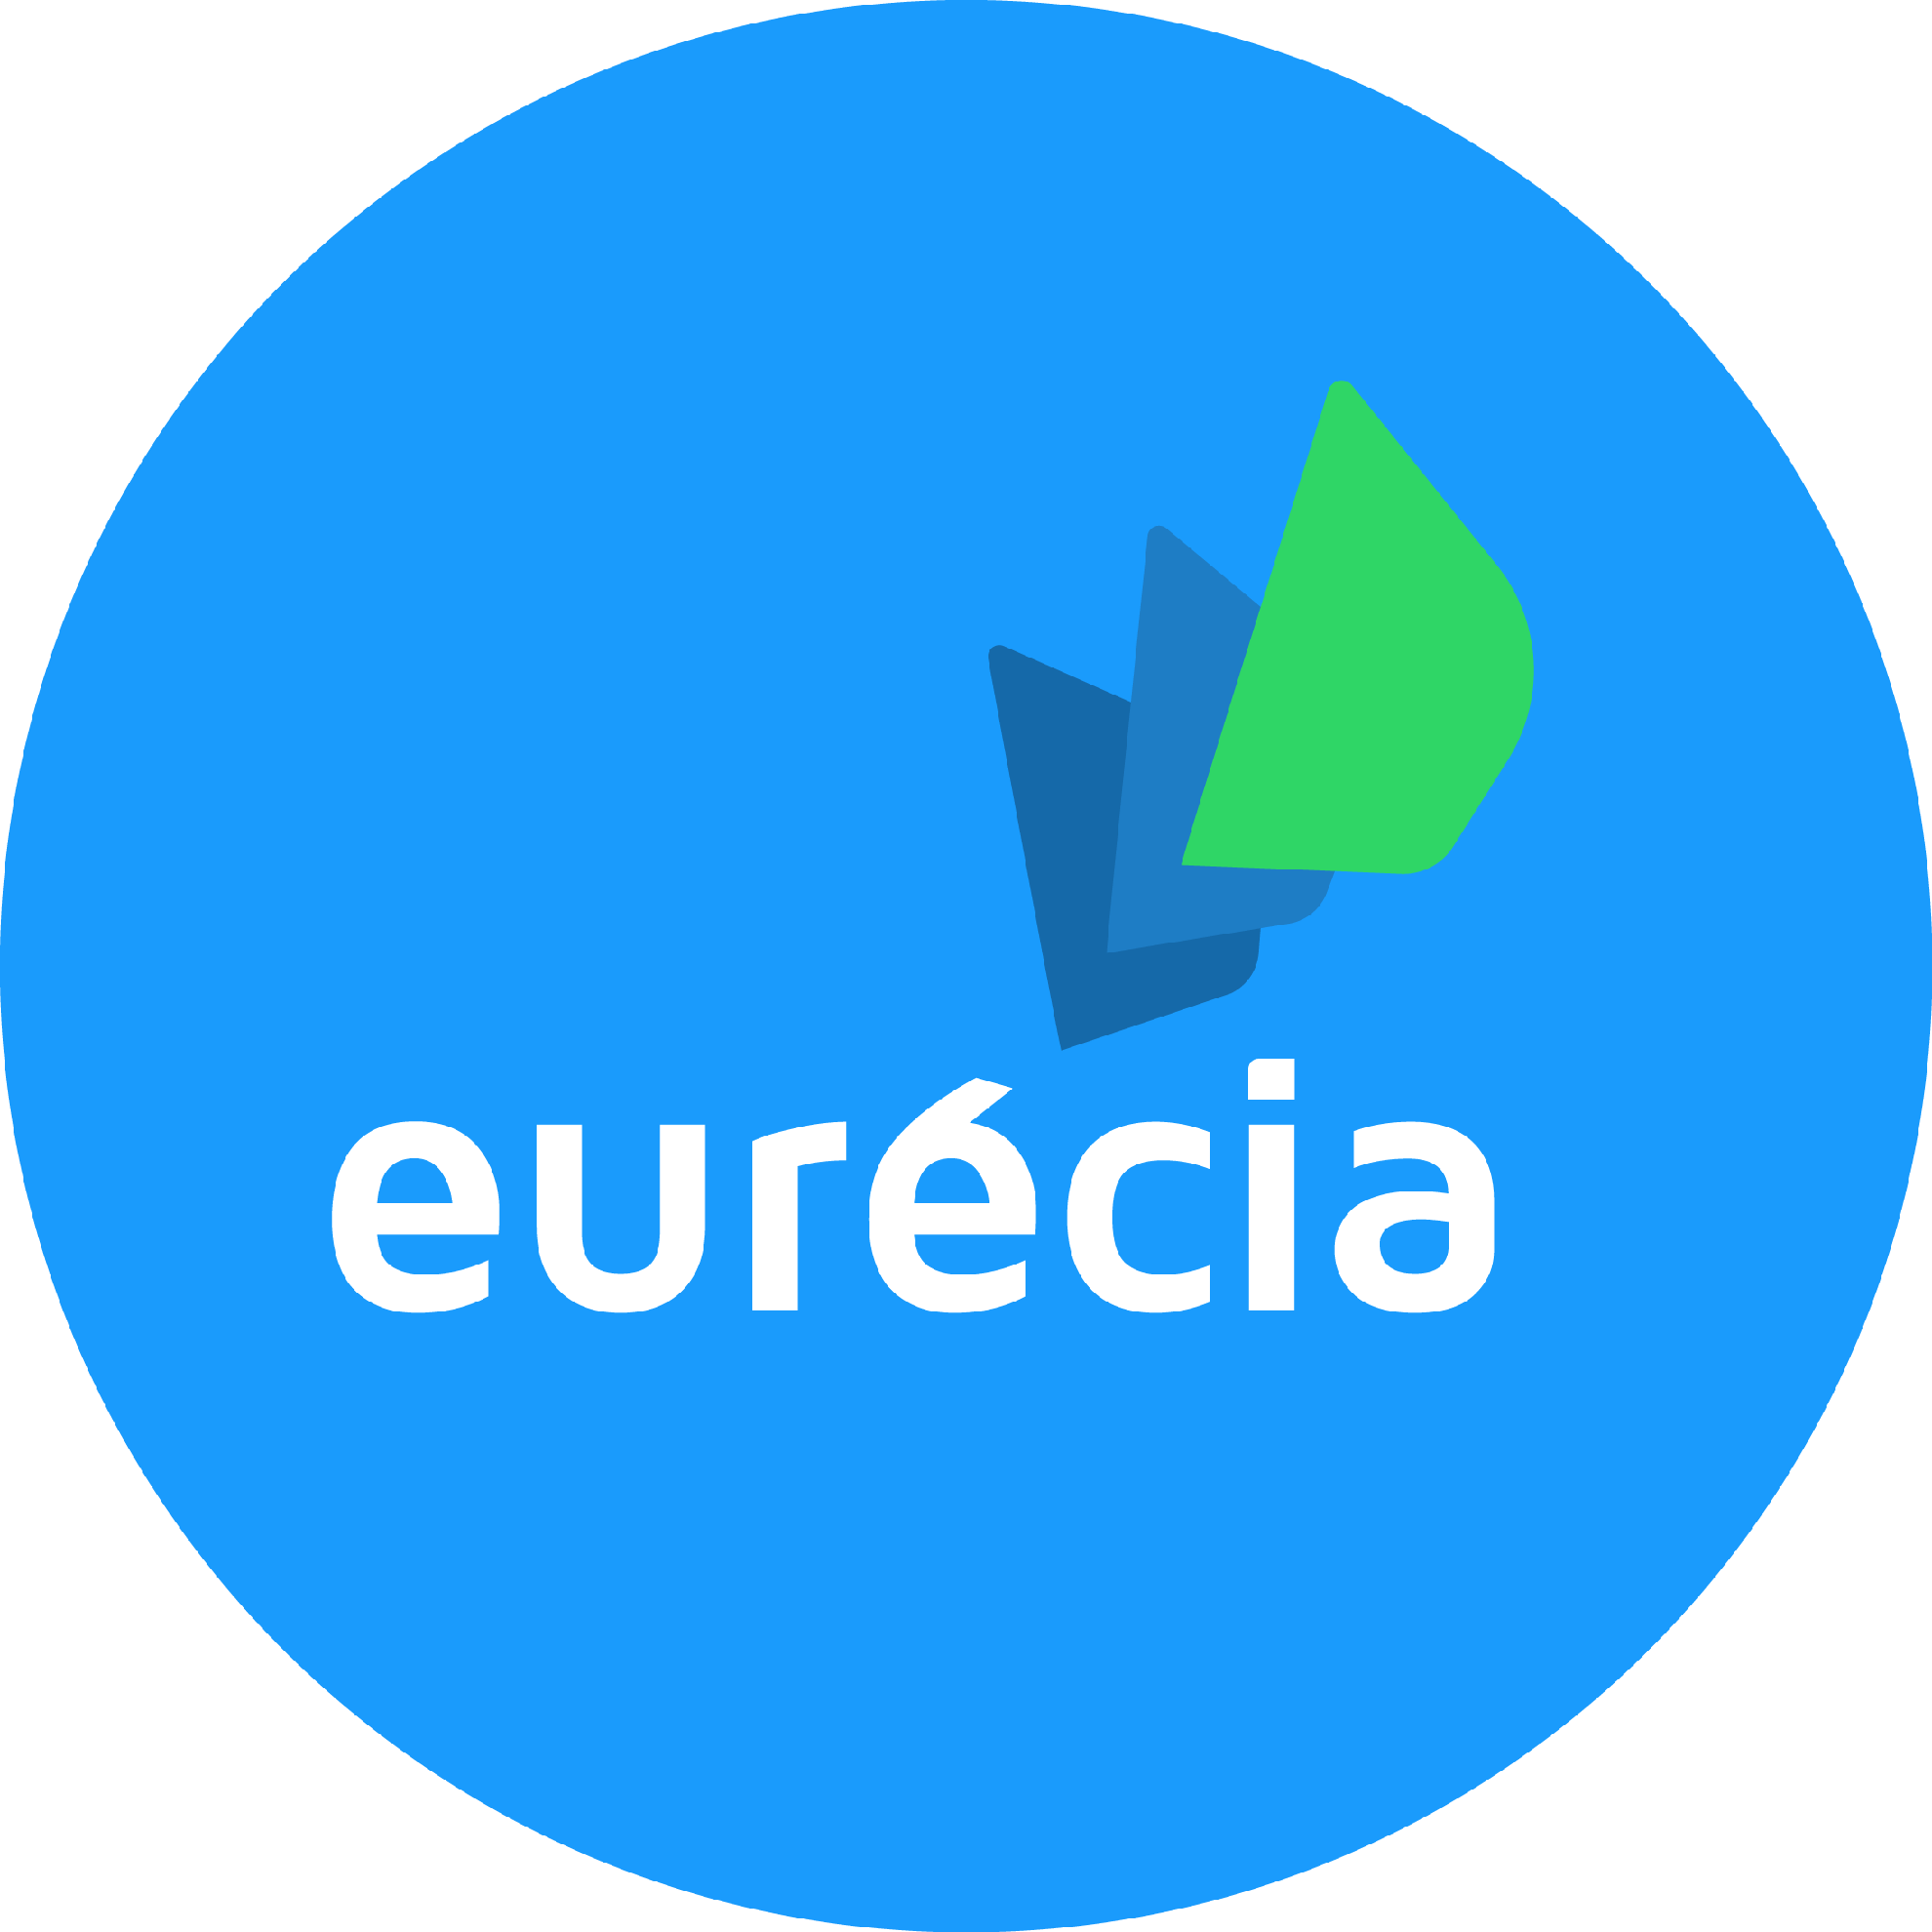 Test de Eurecia, le logiciel pour mieux gérer les ressources humaines